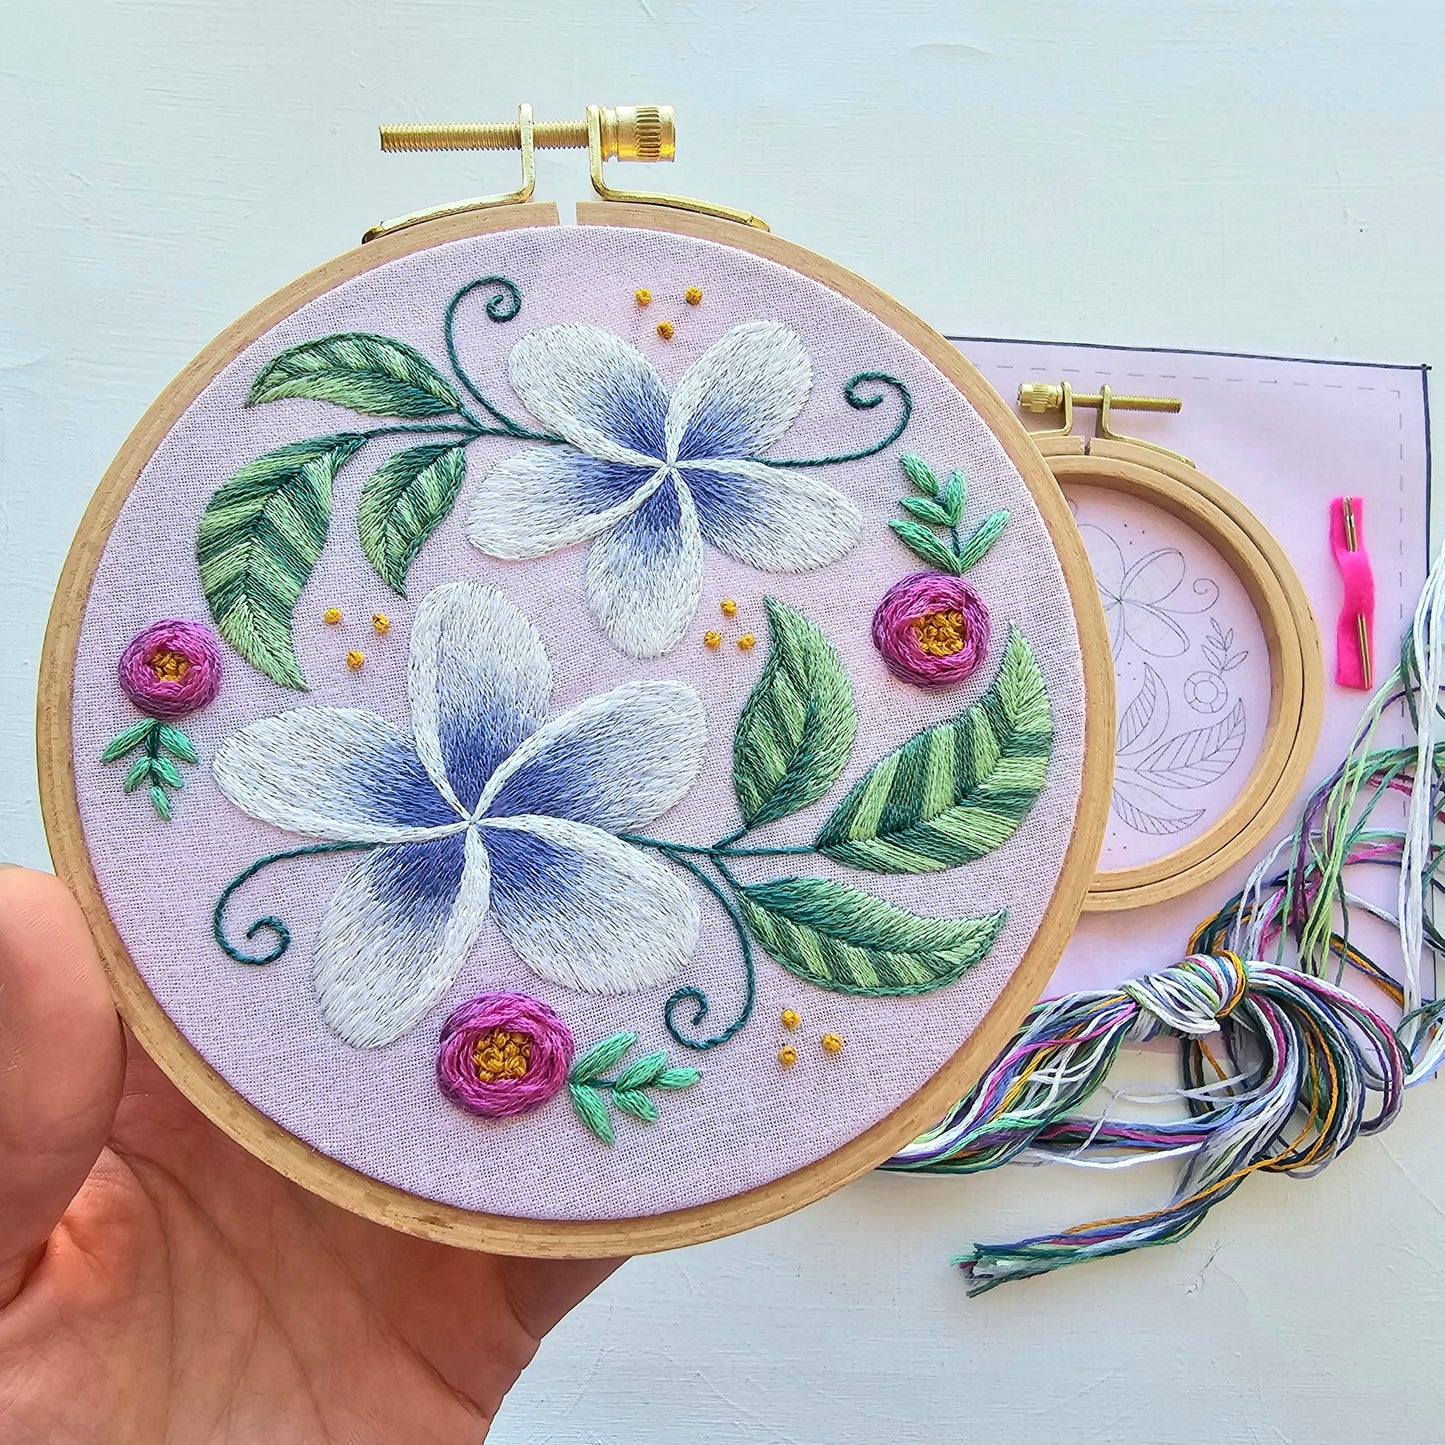 Plumeria Embroidery Kit